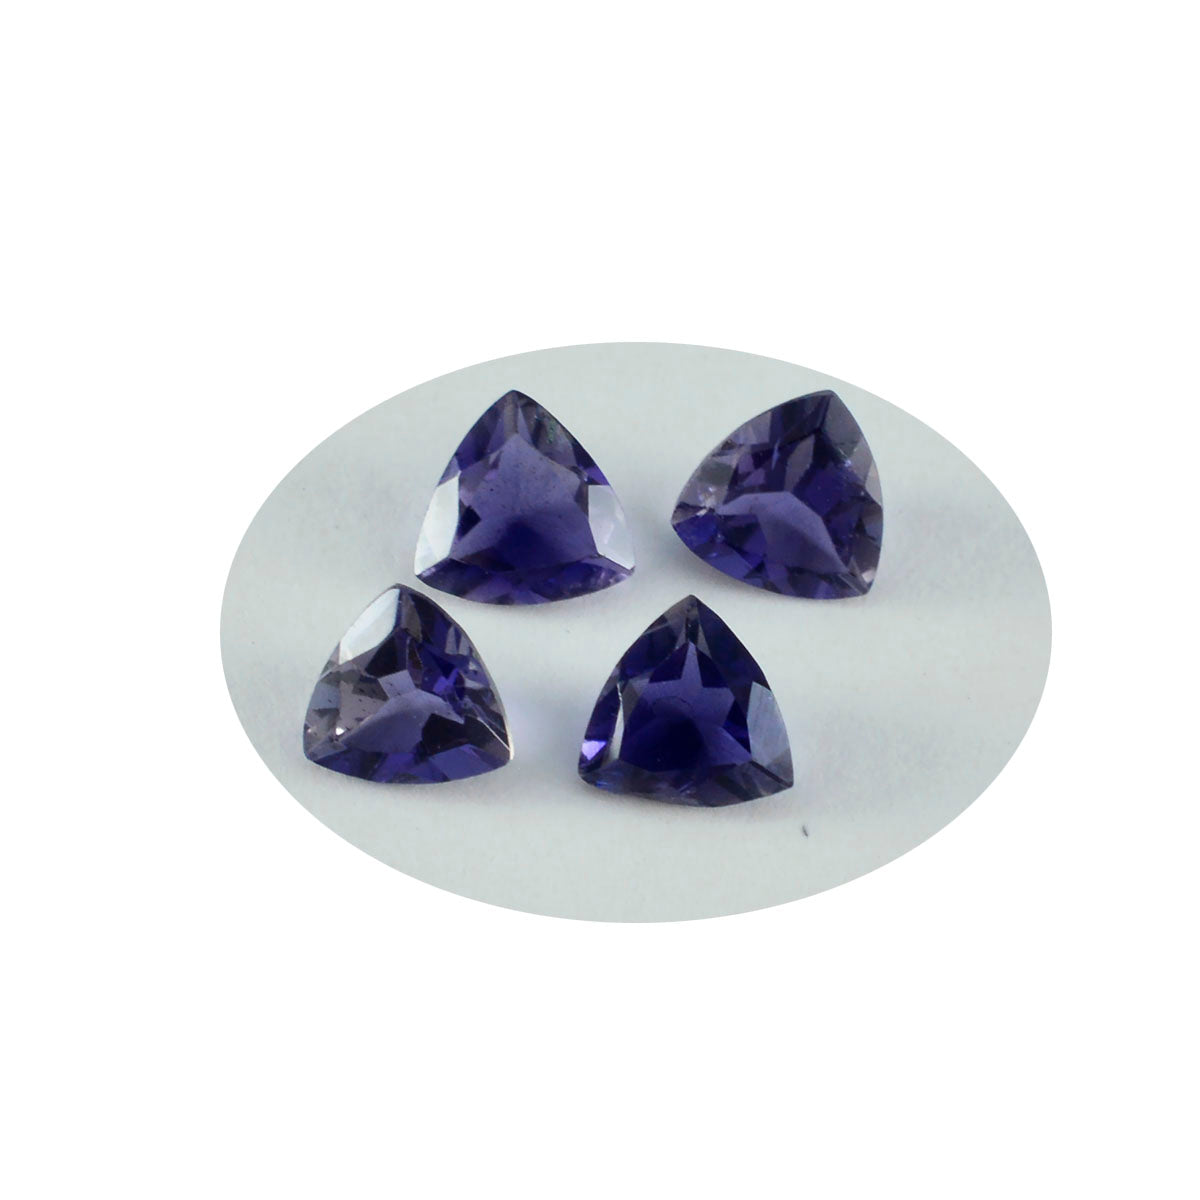 Riyogems 1 Stück blauer Iolith, facettiert, 9 x 9 mm, Billionenform, wunderschöne Qualitätsedelsteine